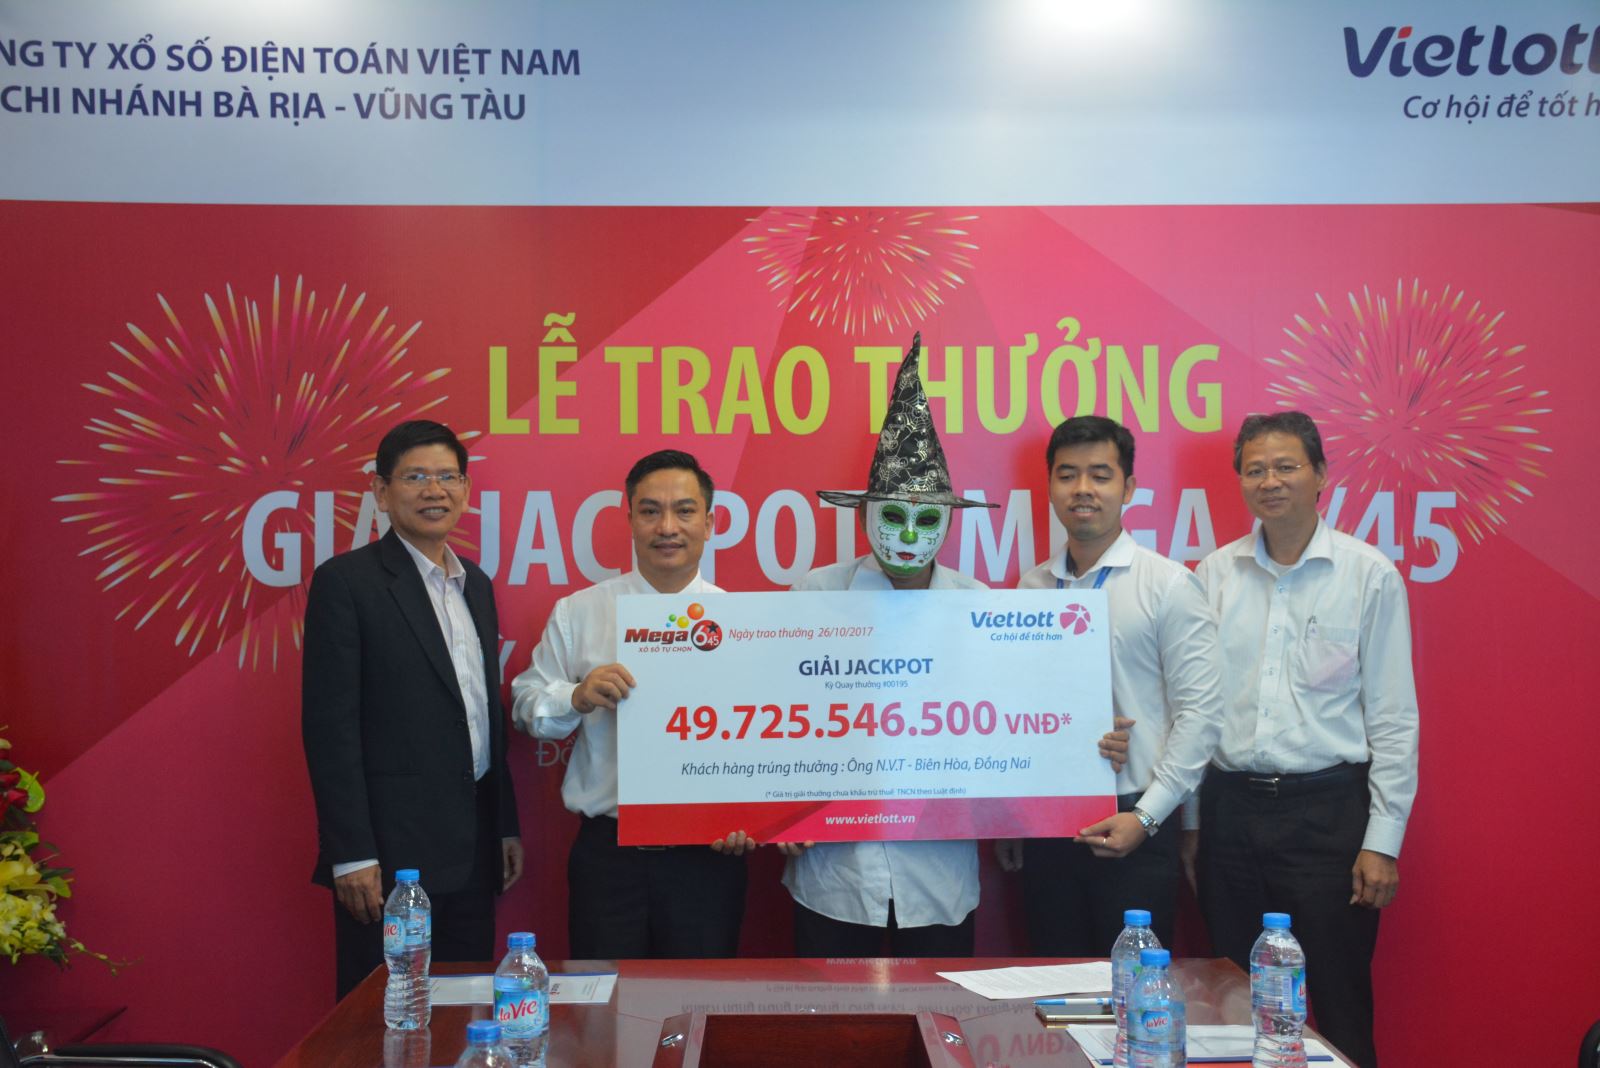 Một khách hàng tại Đồng Nai nhận thưởng Vietlott gần 50 tỷ đồng